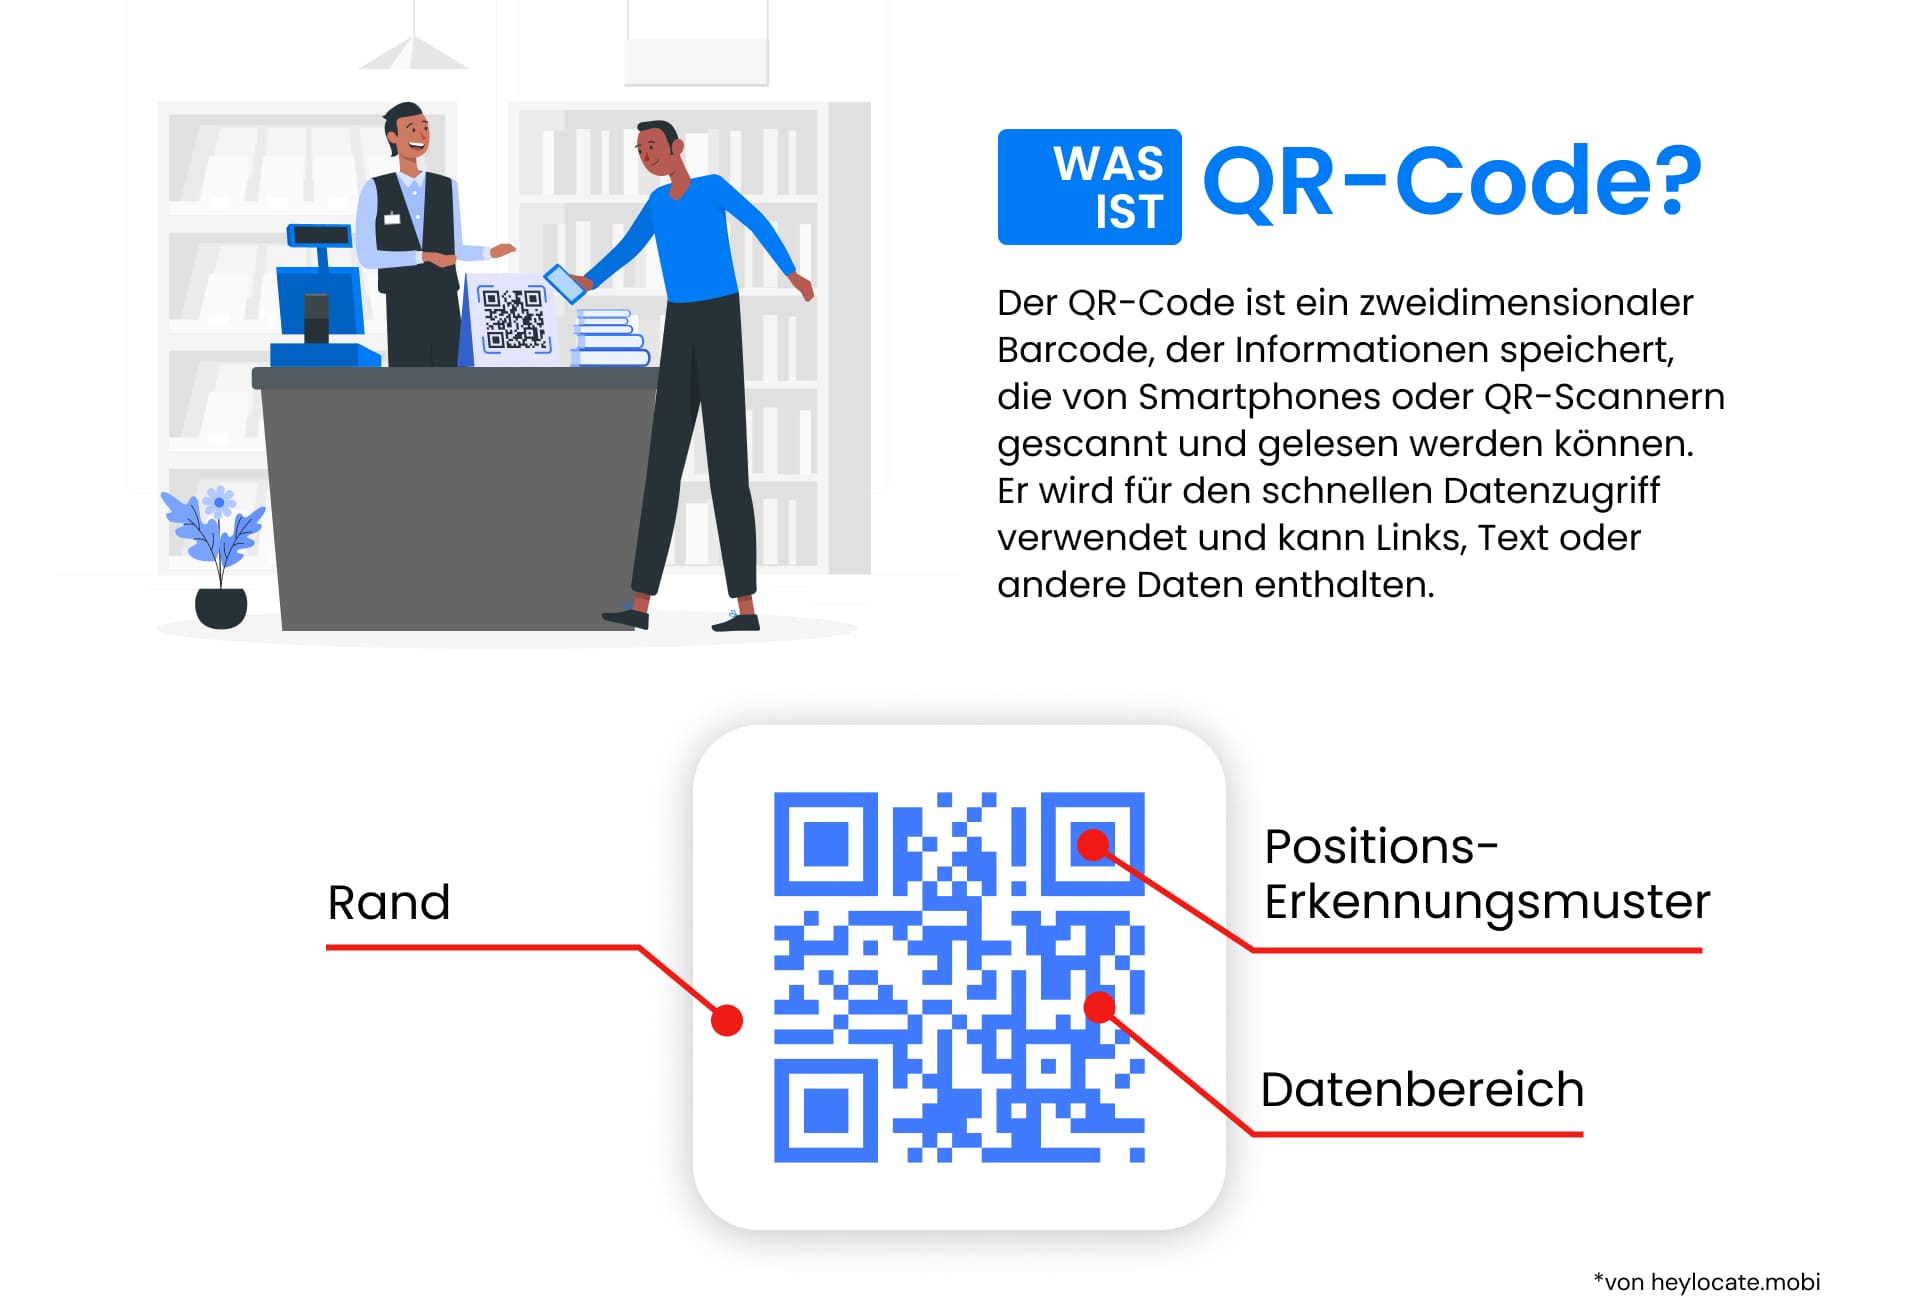 Eine Infografik, die erklärt, was QR-Codes sind, einschließlich einer Illustration eines QR-Codes, in der Teile wie der Rand, das Positionserkennungsmuster und der Datenbereich beschriftet sind.